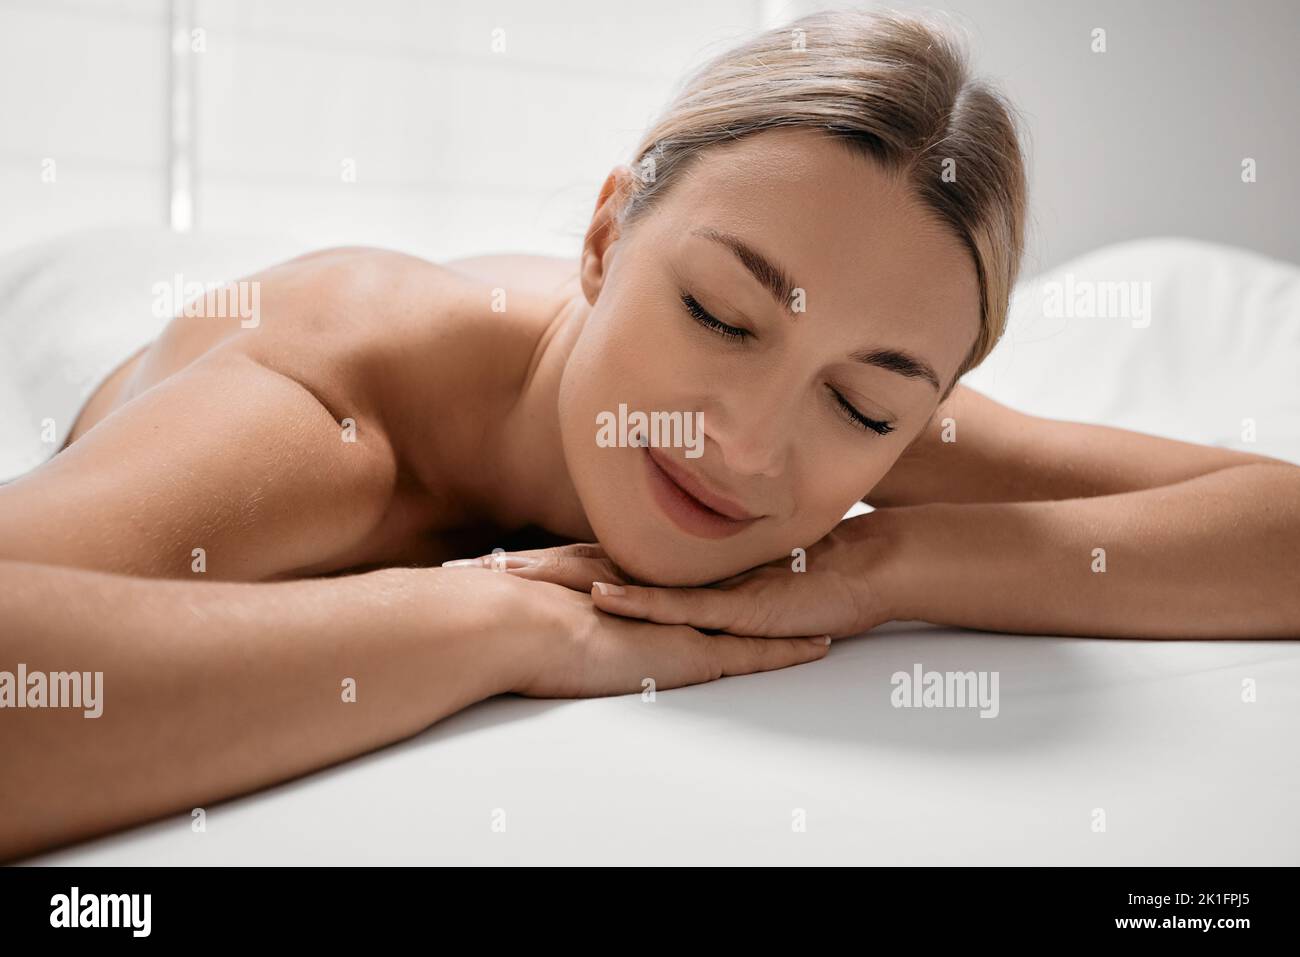 La jolie femme aux yeux fermés se détend sur une table de massage après des massages et des soins spa Banque D'Images